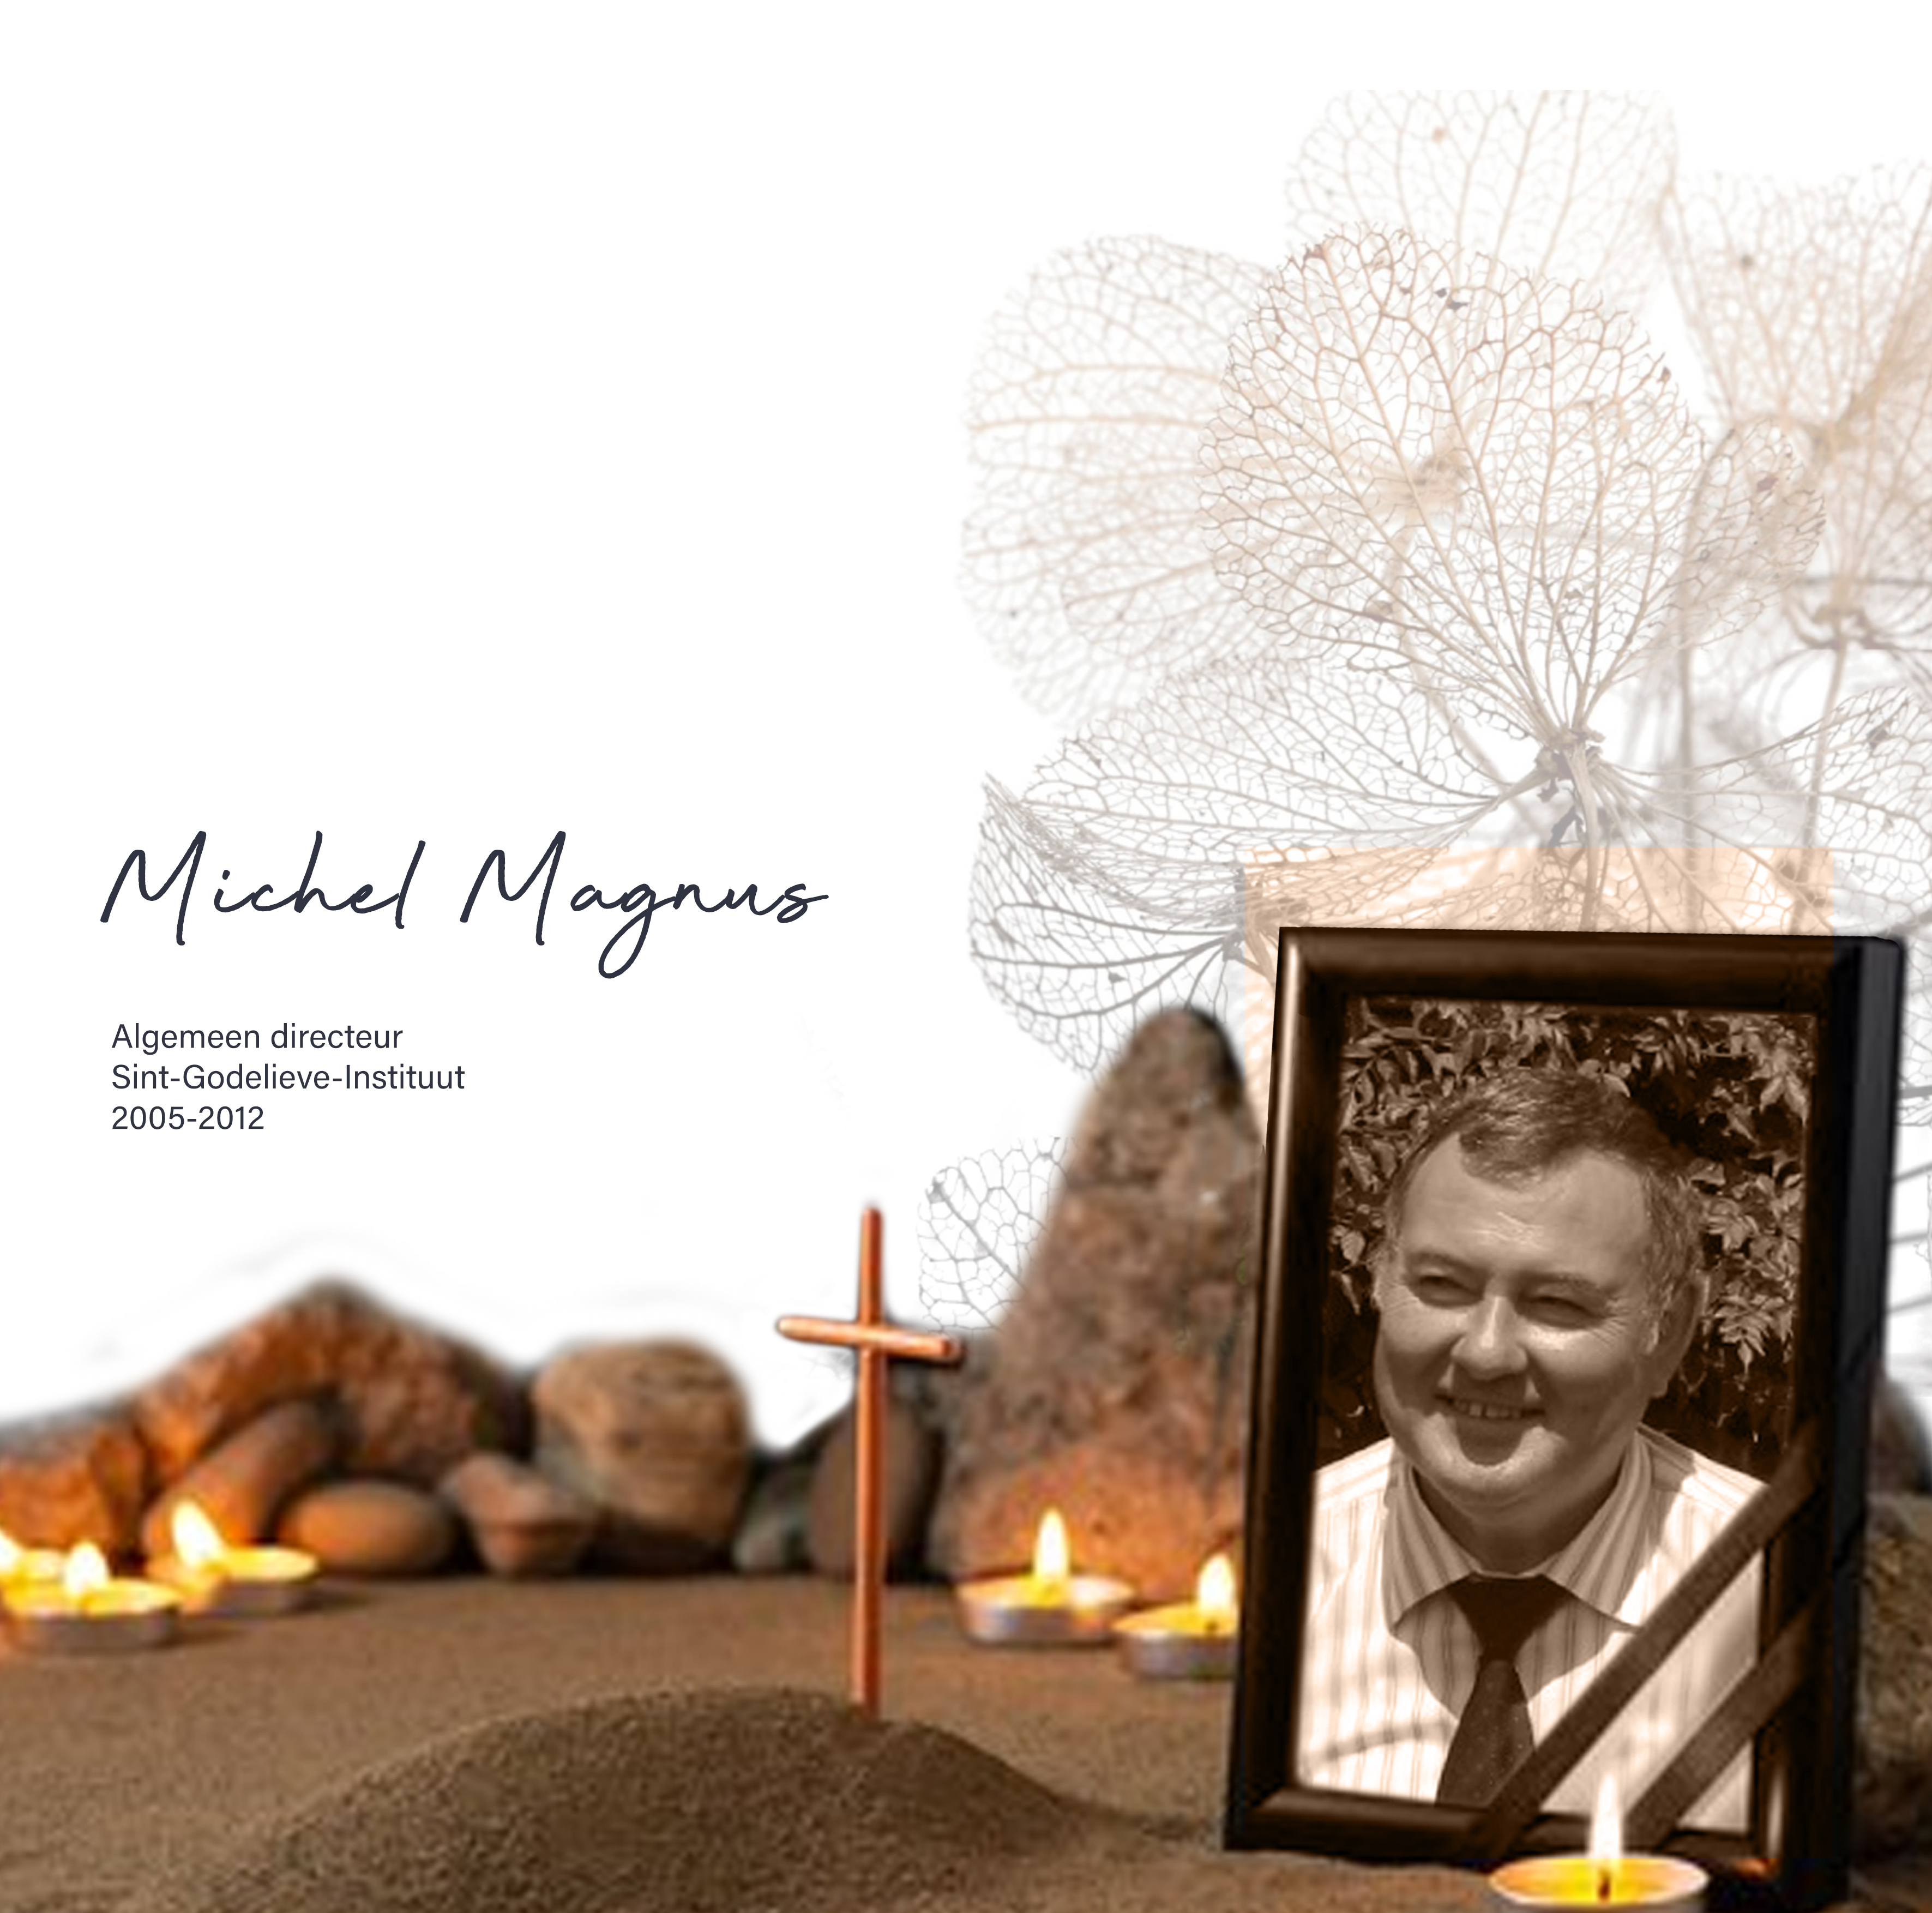 Michel Magnus